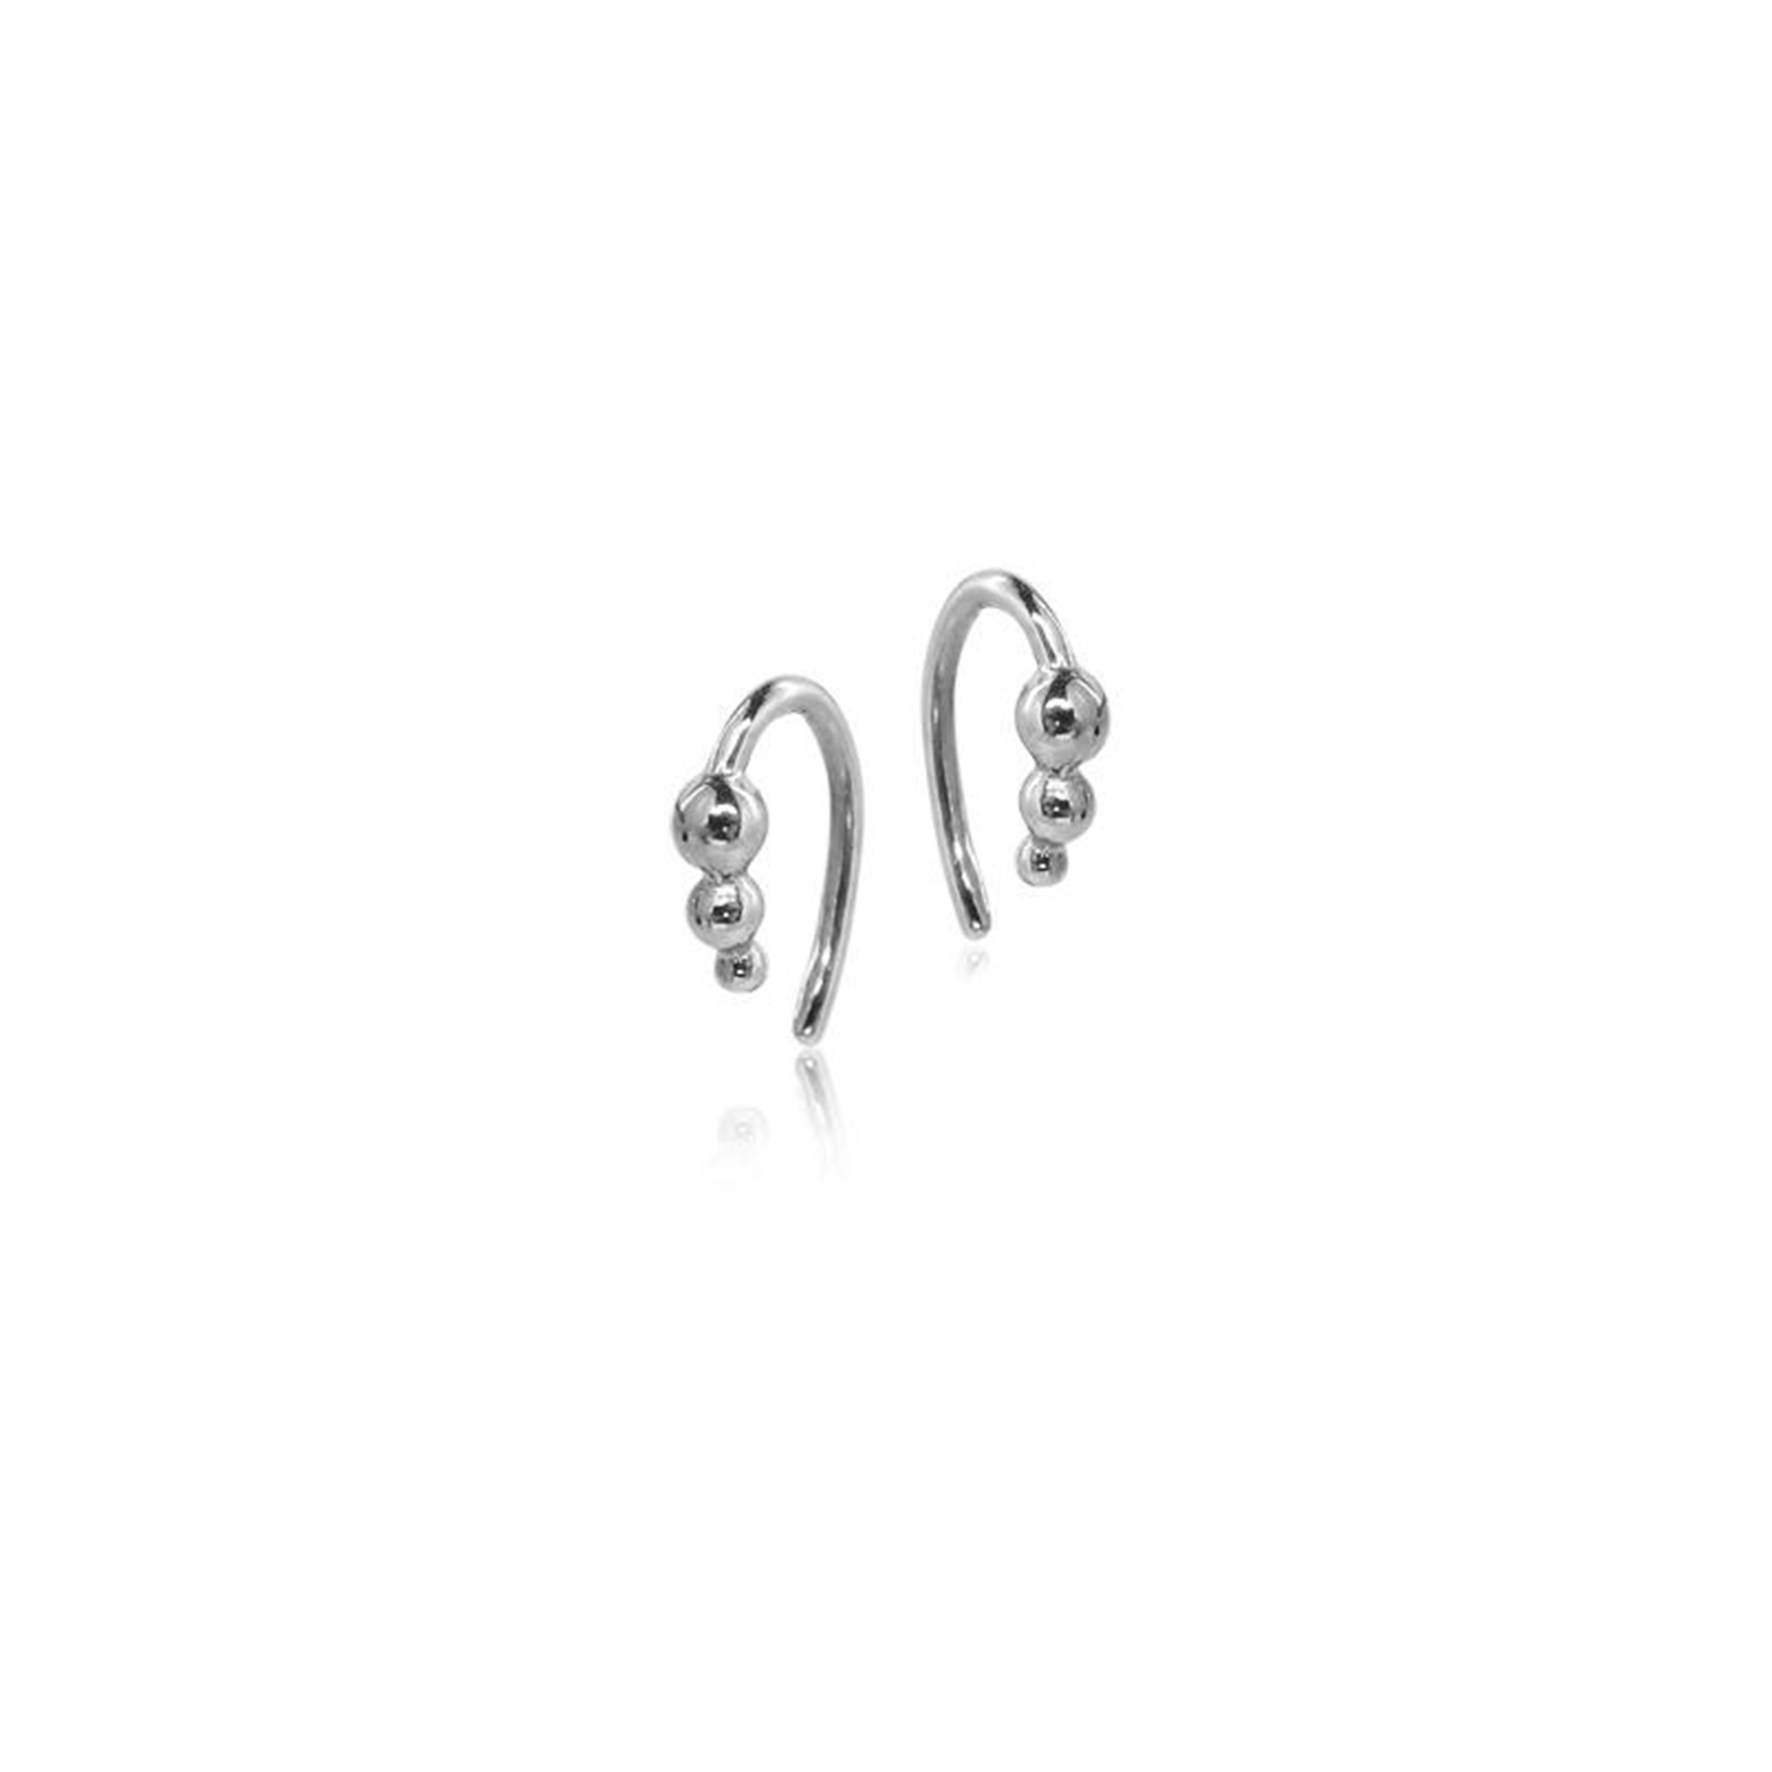 Beadie Earrings from Sistie in Silver Sterling 925